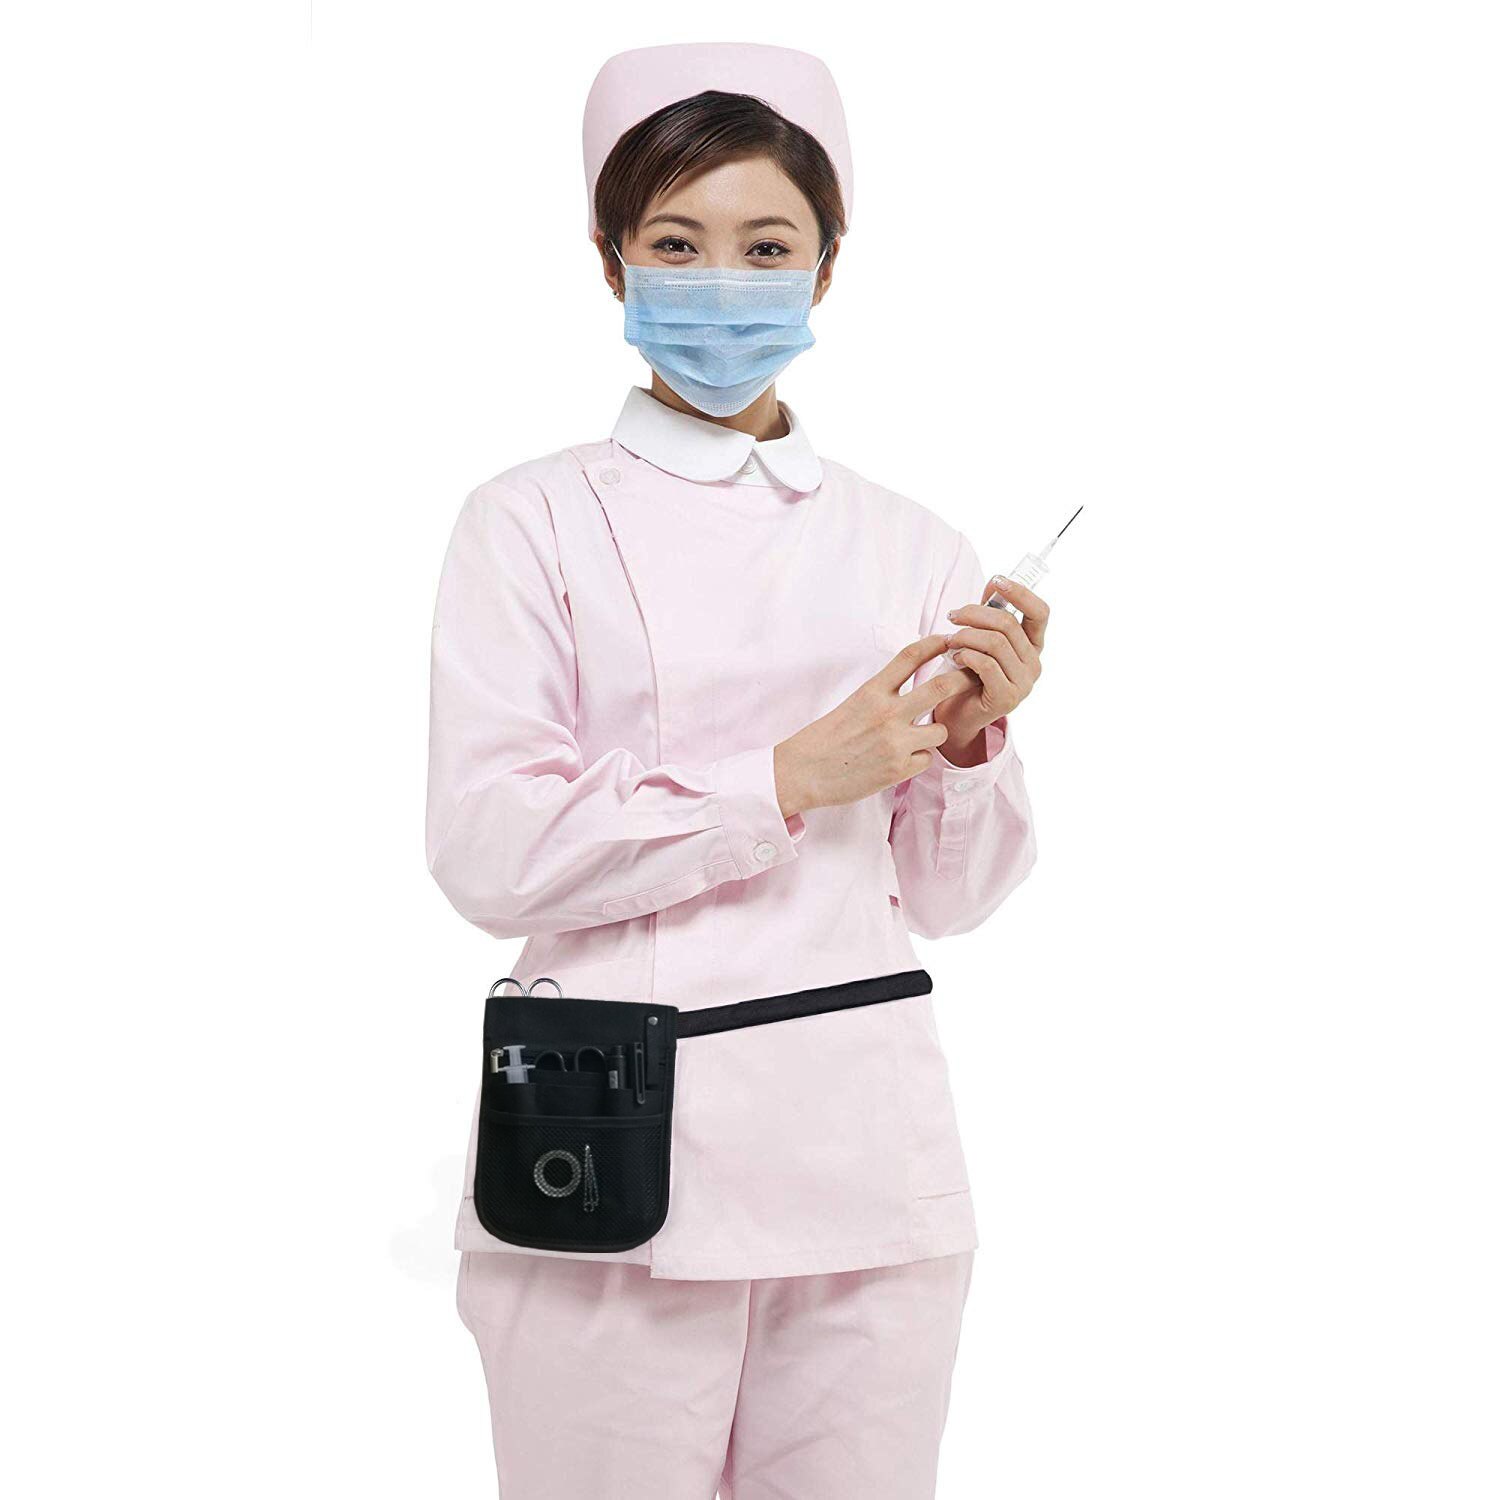 Nurse Nursing Belt Organizer Waist Bag Pouch for Nurse Accessories 2 Sided - 8 Pocket Organizer Utility Belt